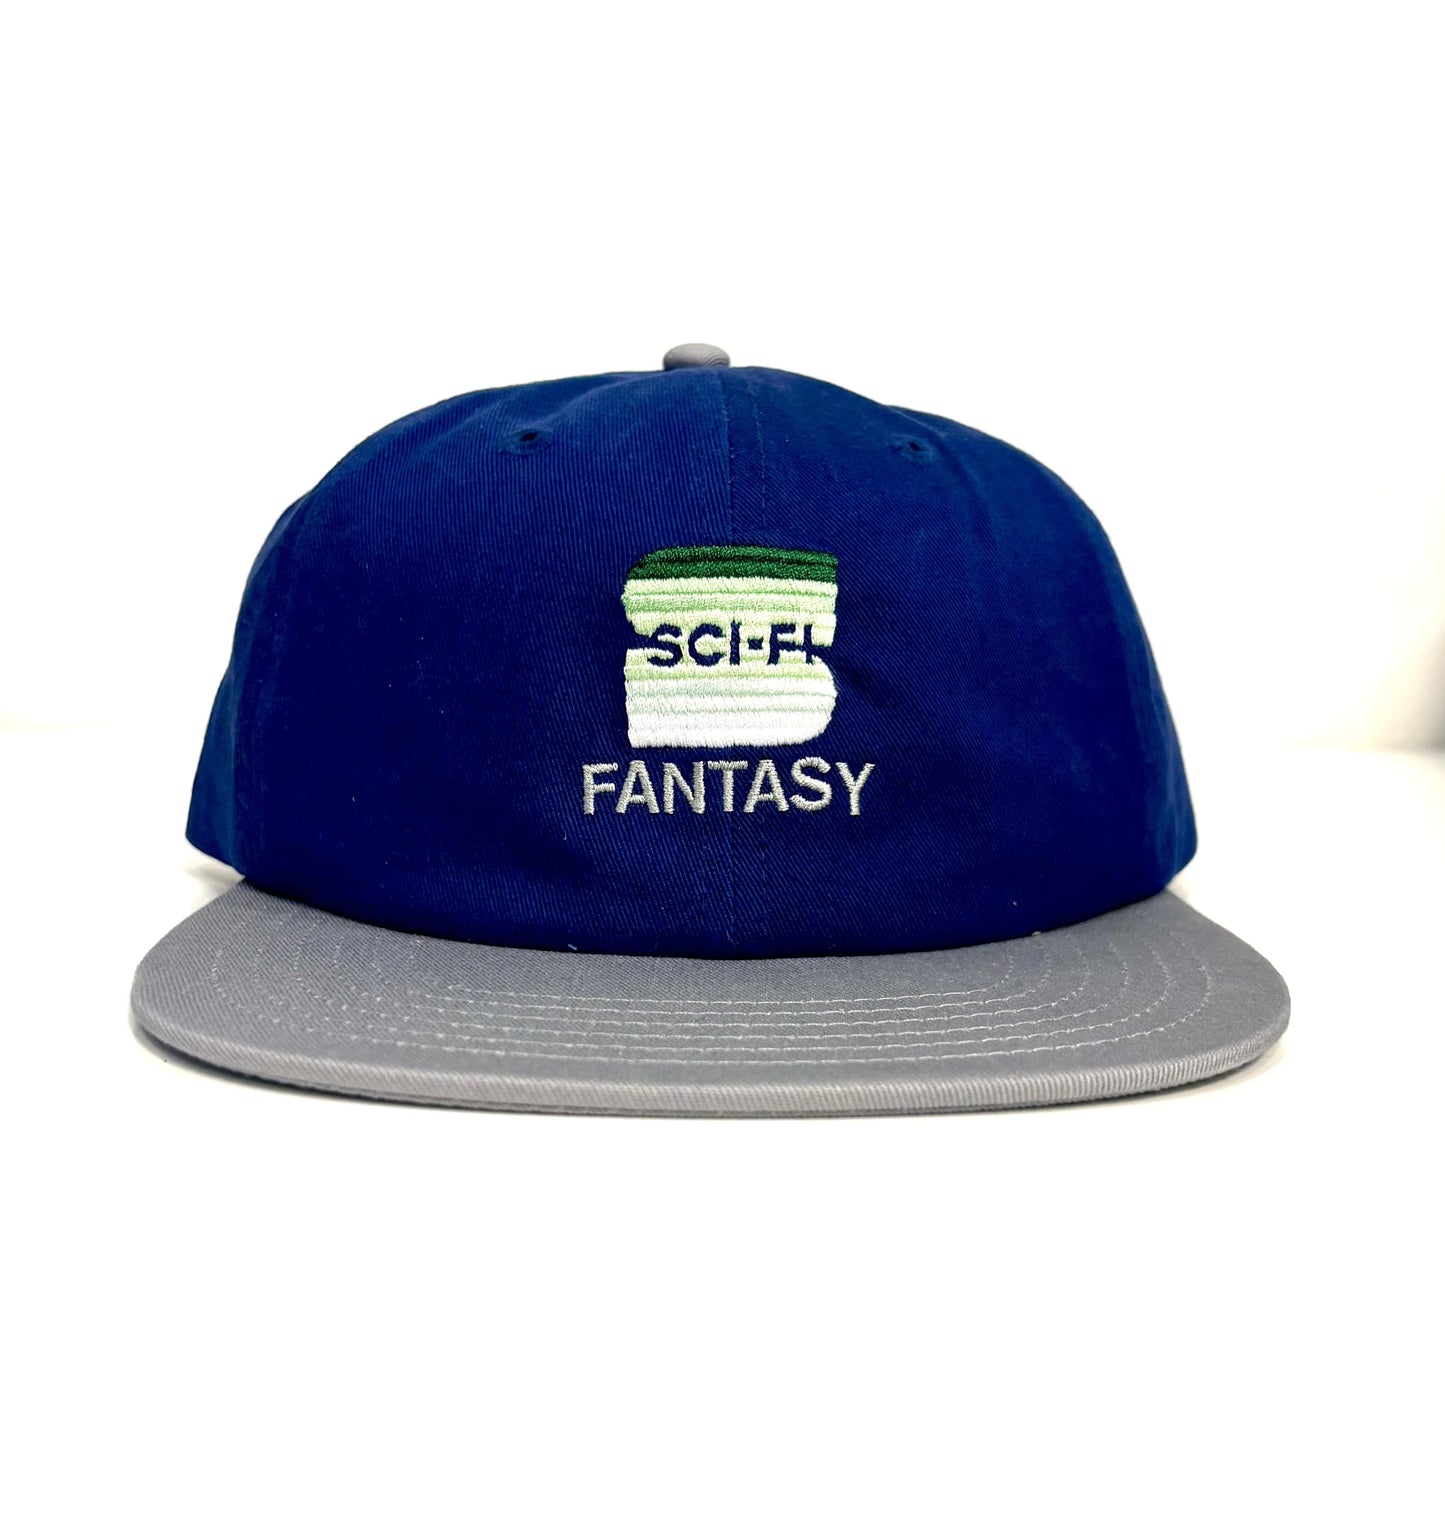 Sci-Fi Fantasy S Hat Blue/Gray